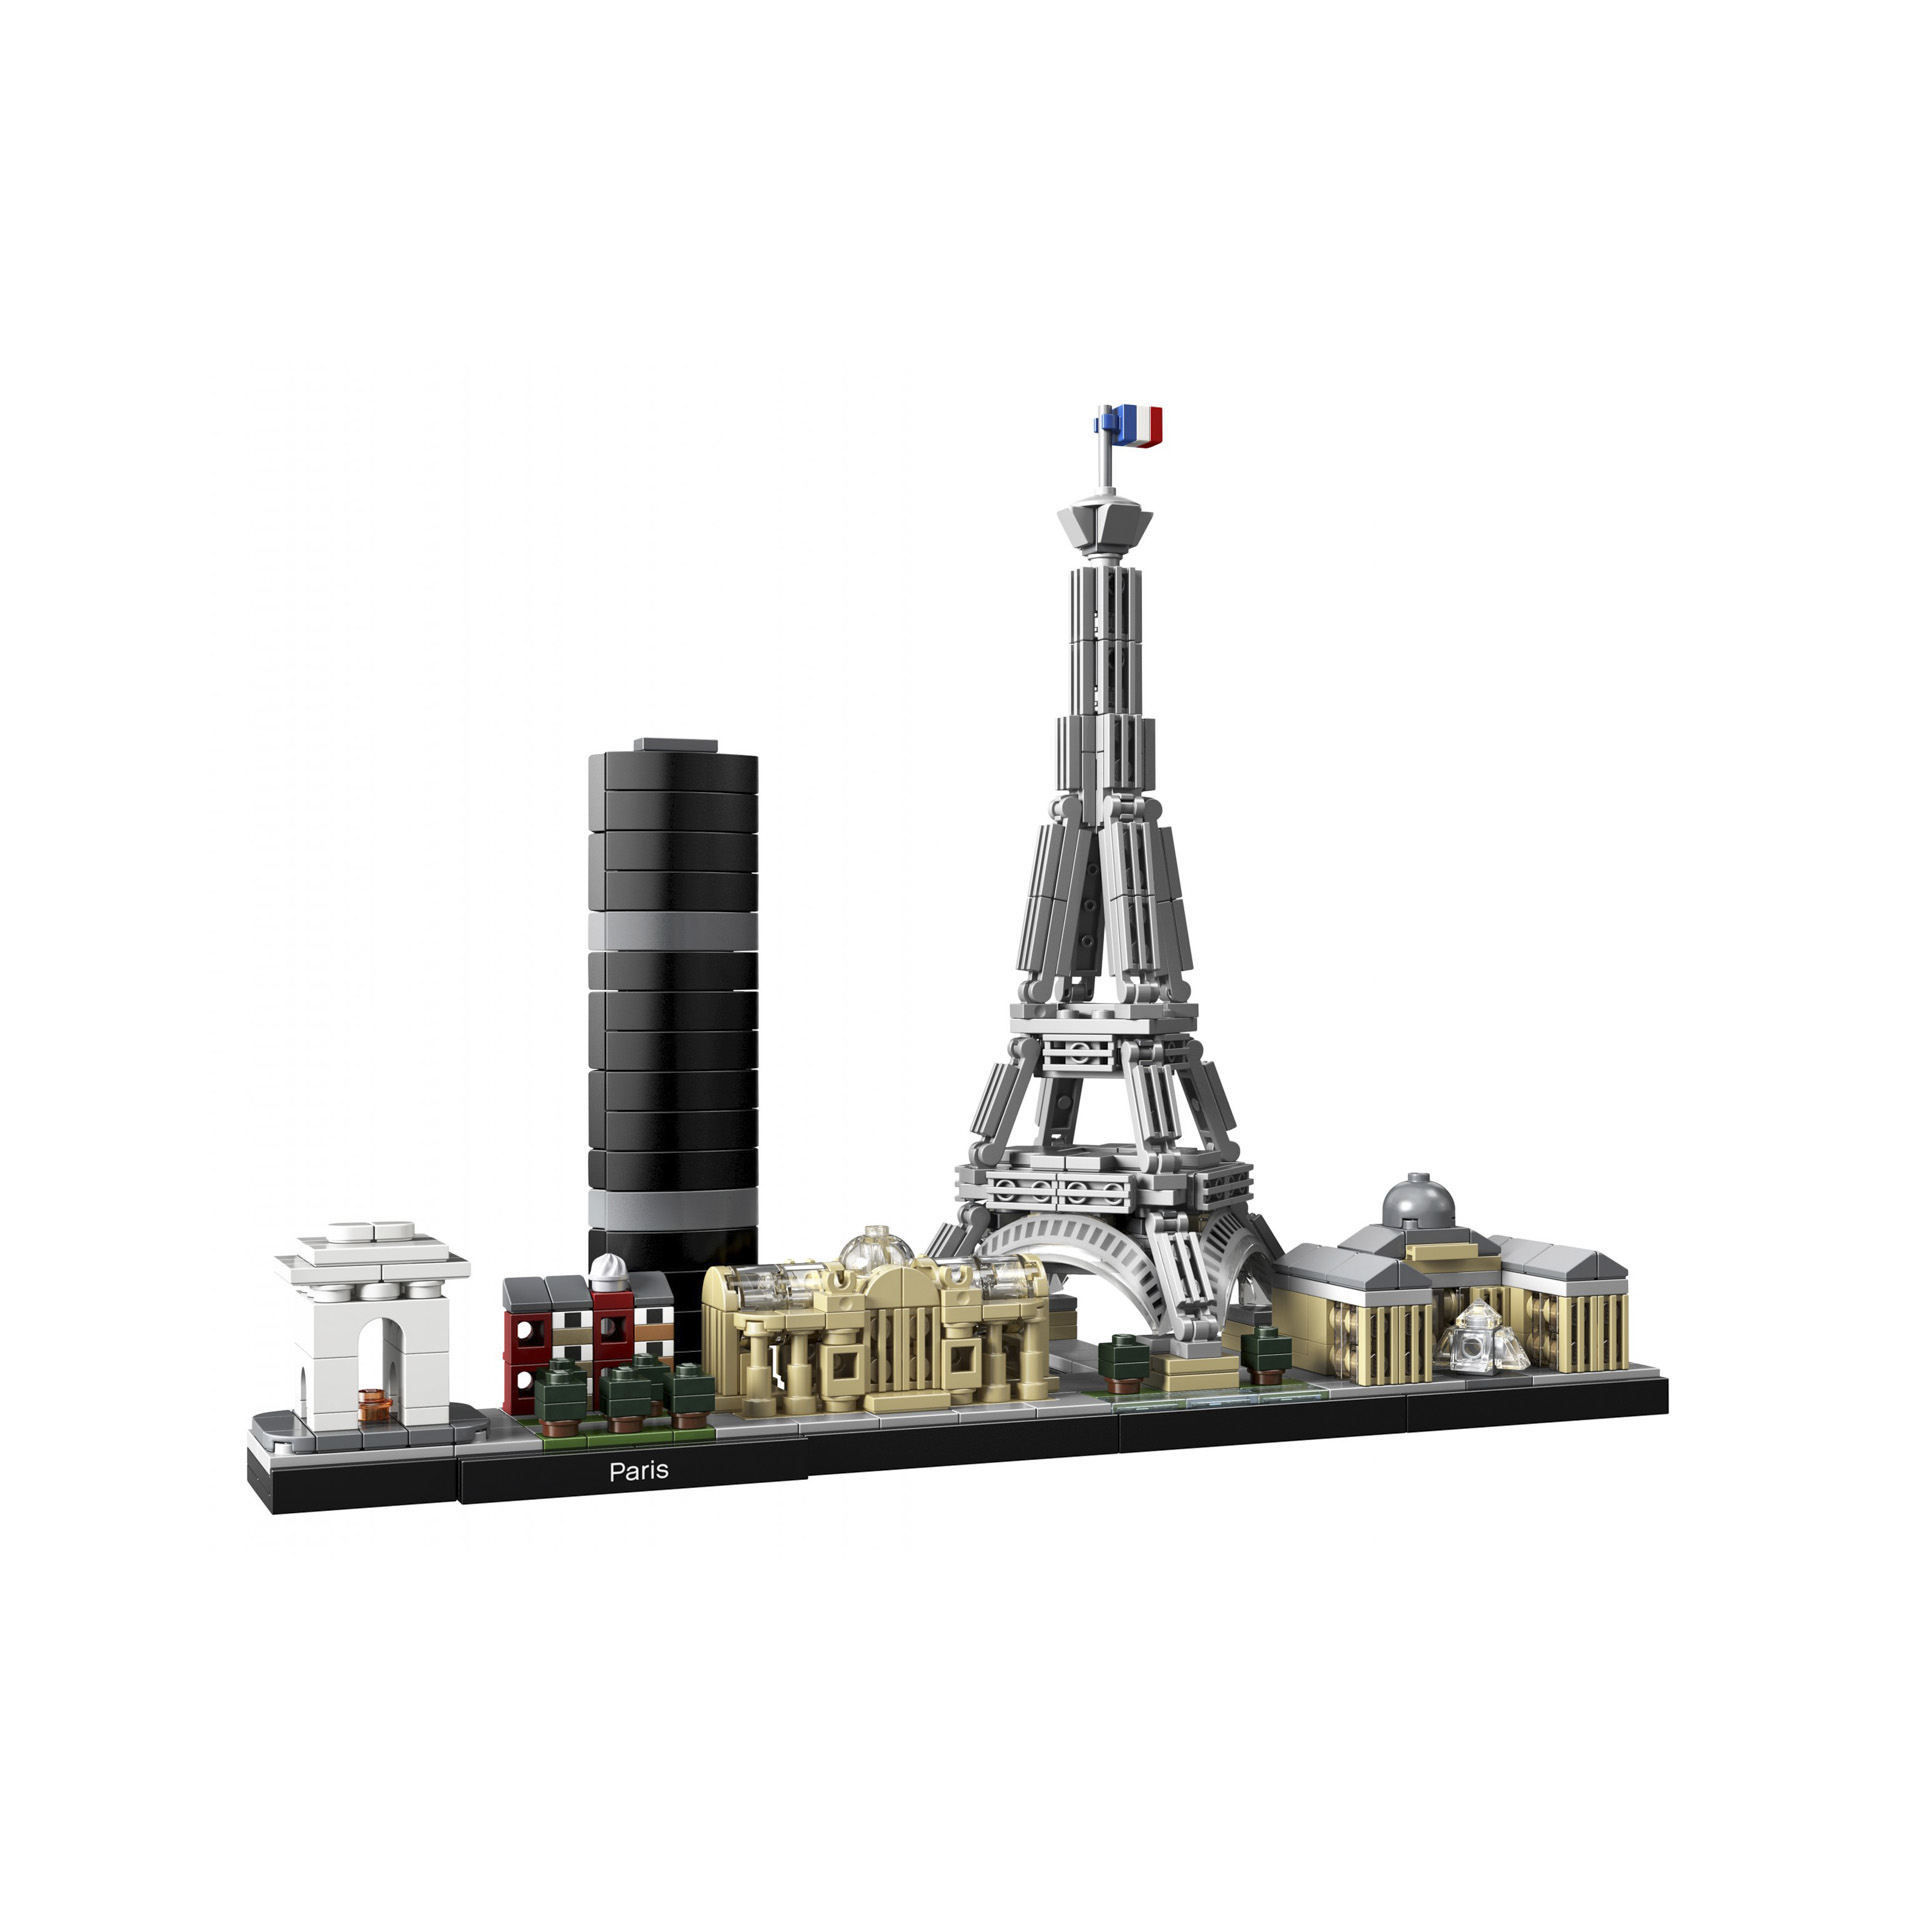 LEGO Architecture Parigi, Set di Costruzioni con Torre Eiffel, Louvre, Collezion 21044, , large